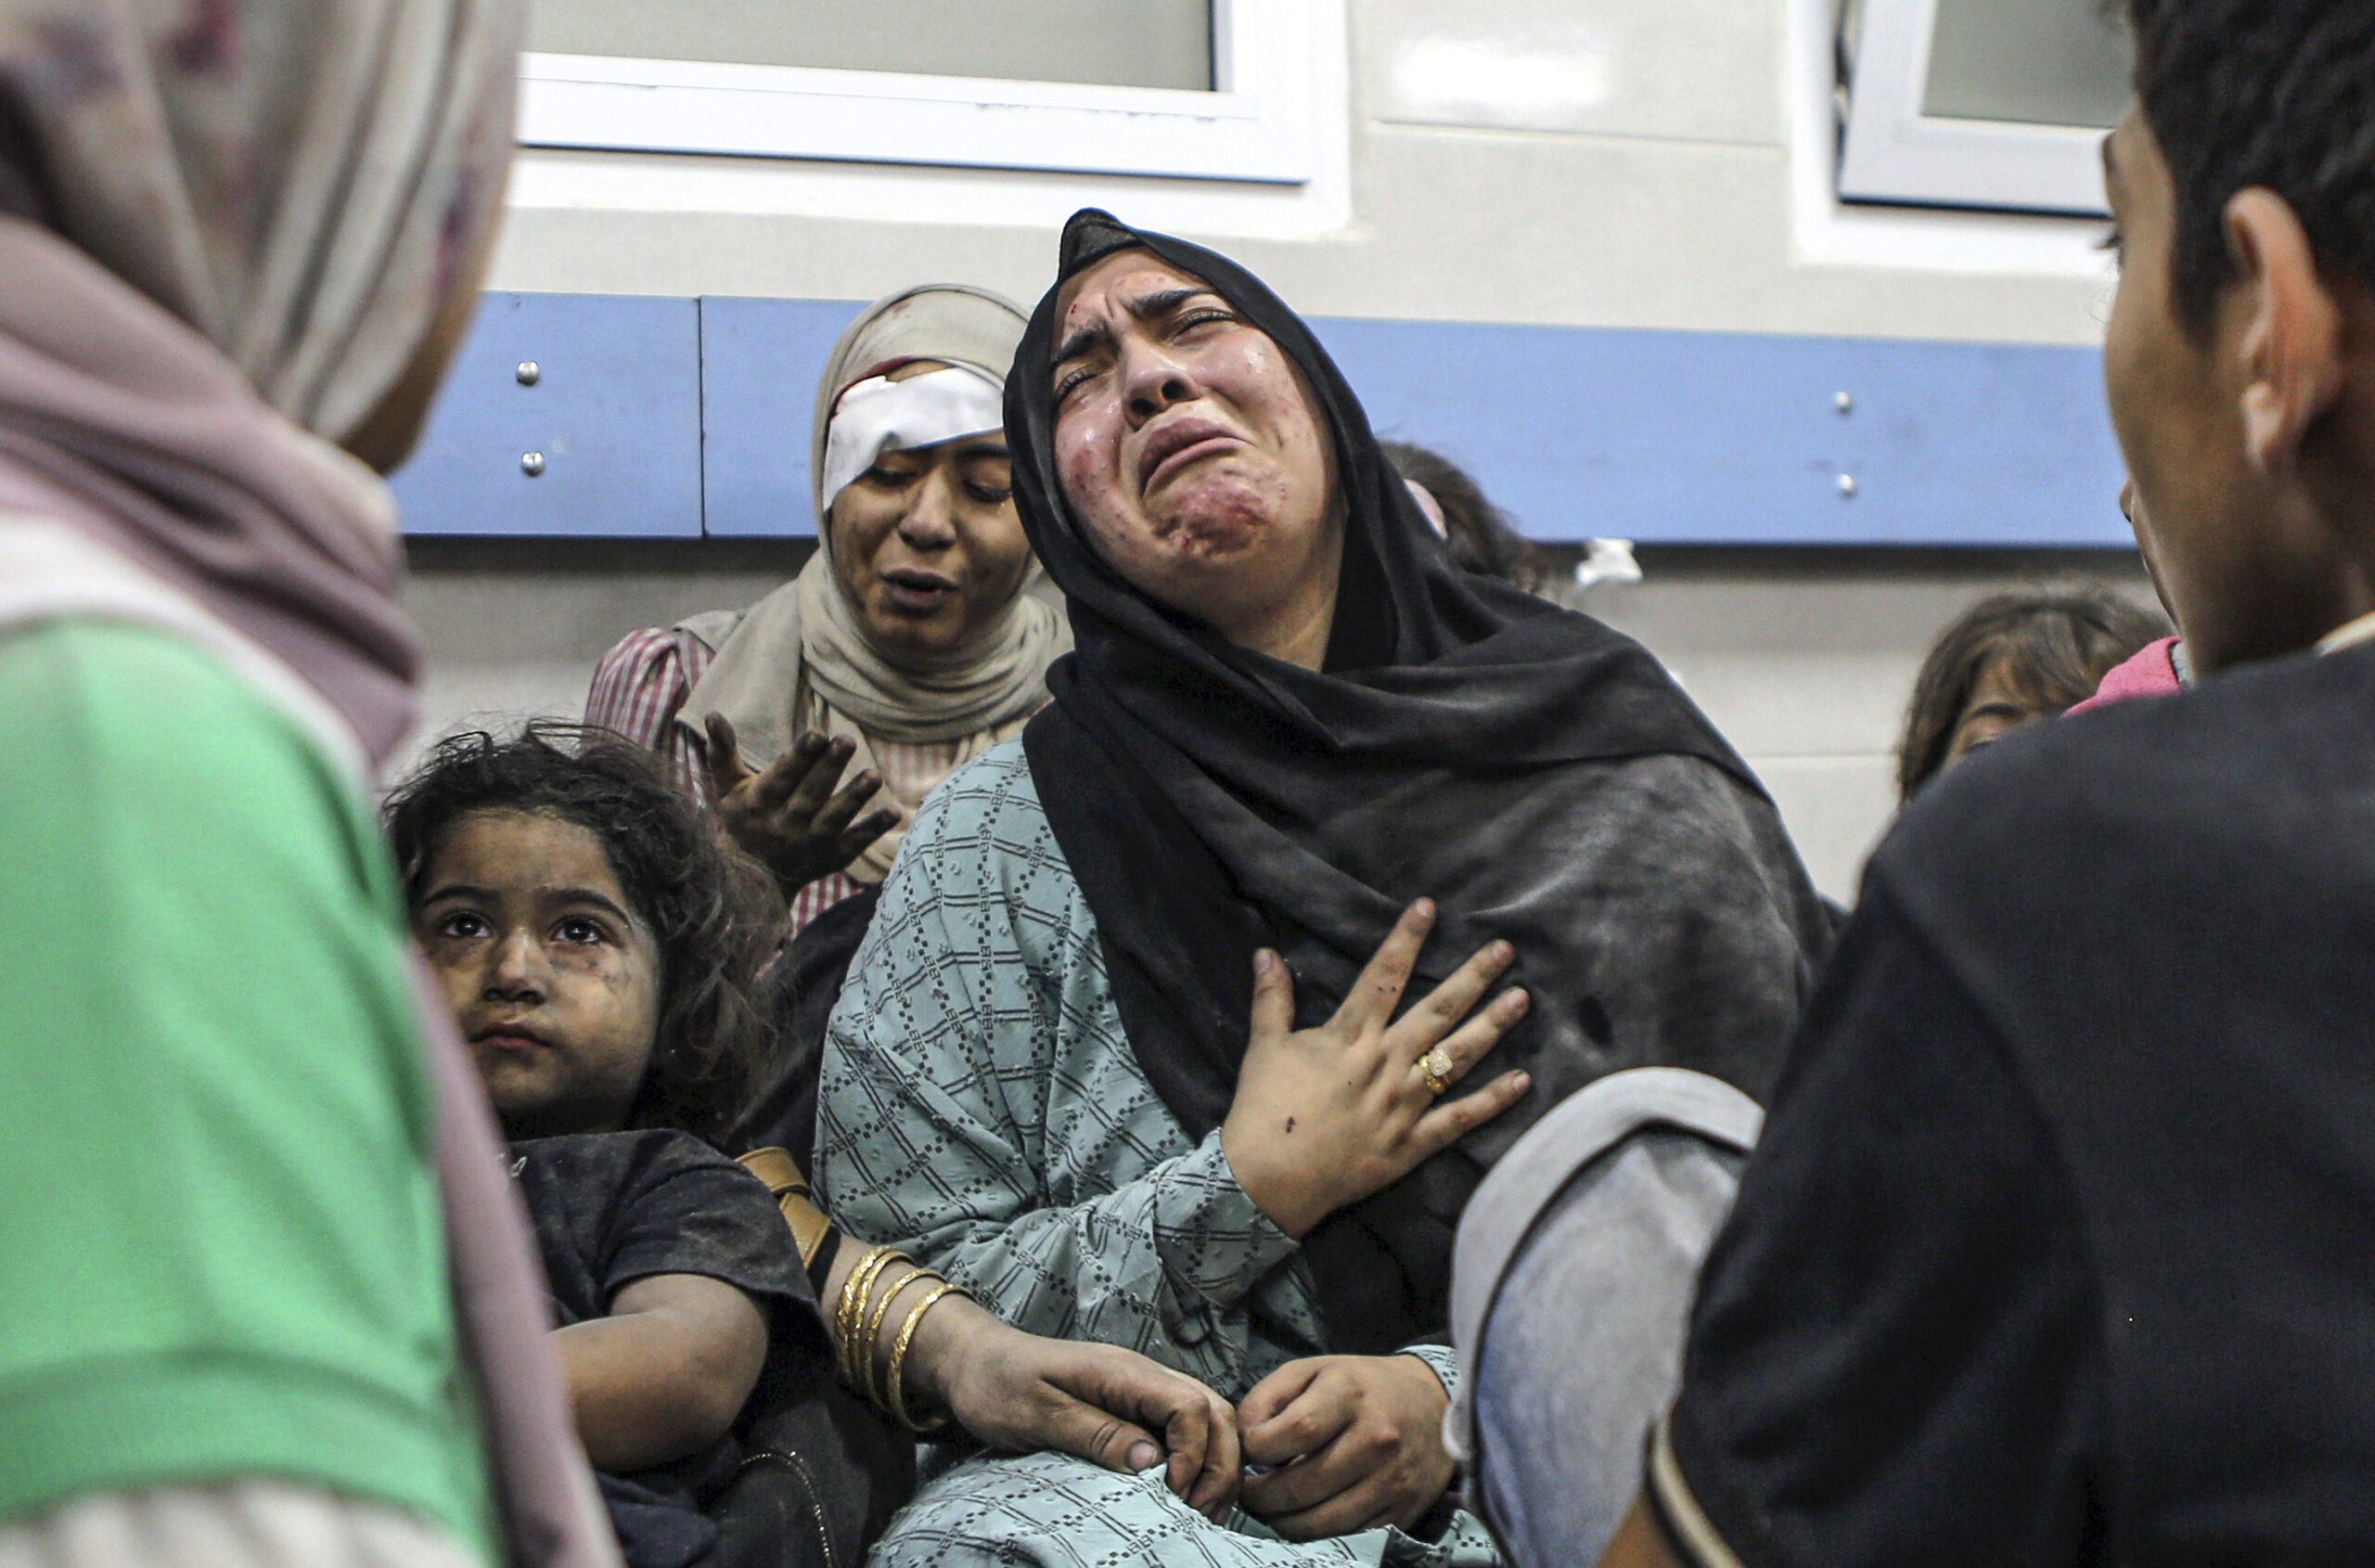 Βομβαρδισμός νοσοκομείου στη Γάζα: Ο Παλαιστινιακός Ισλαμικός Τζιχάντ χαρακτηρίζει τις κατηγορίες του Ισραήλ «ψέματα»